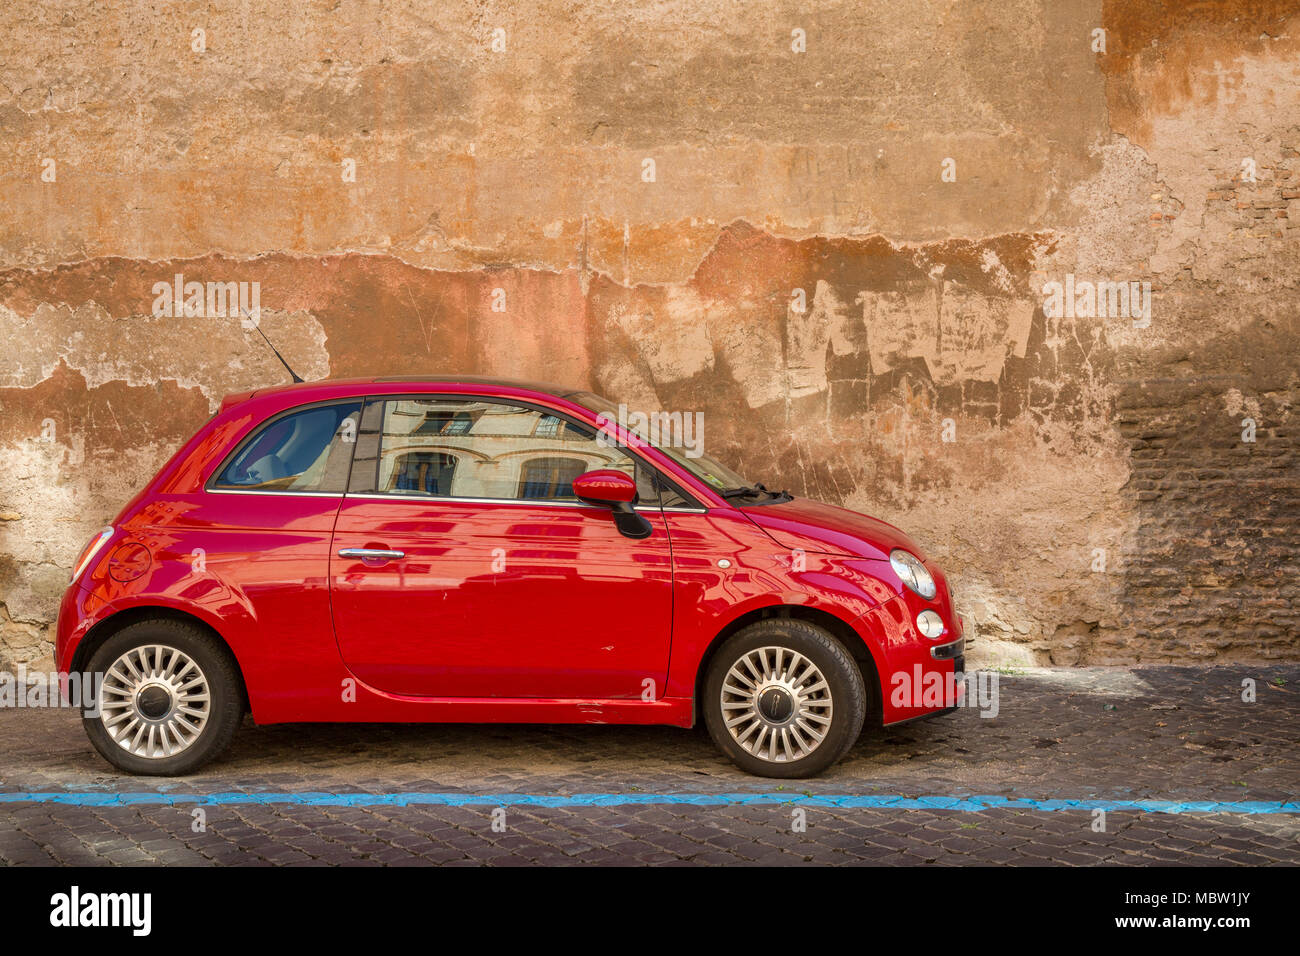 Rosso Fiat 500 automobile parcheggiata su una strada acciottolata a Roma, Italia, la linea blu indica un è un pagare per parcheggiare bay con parchimetri nelle vicinanze dove potete acquistare Foto Stock